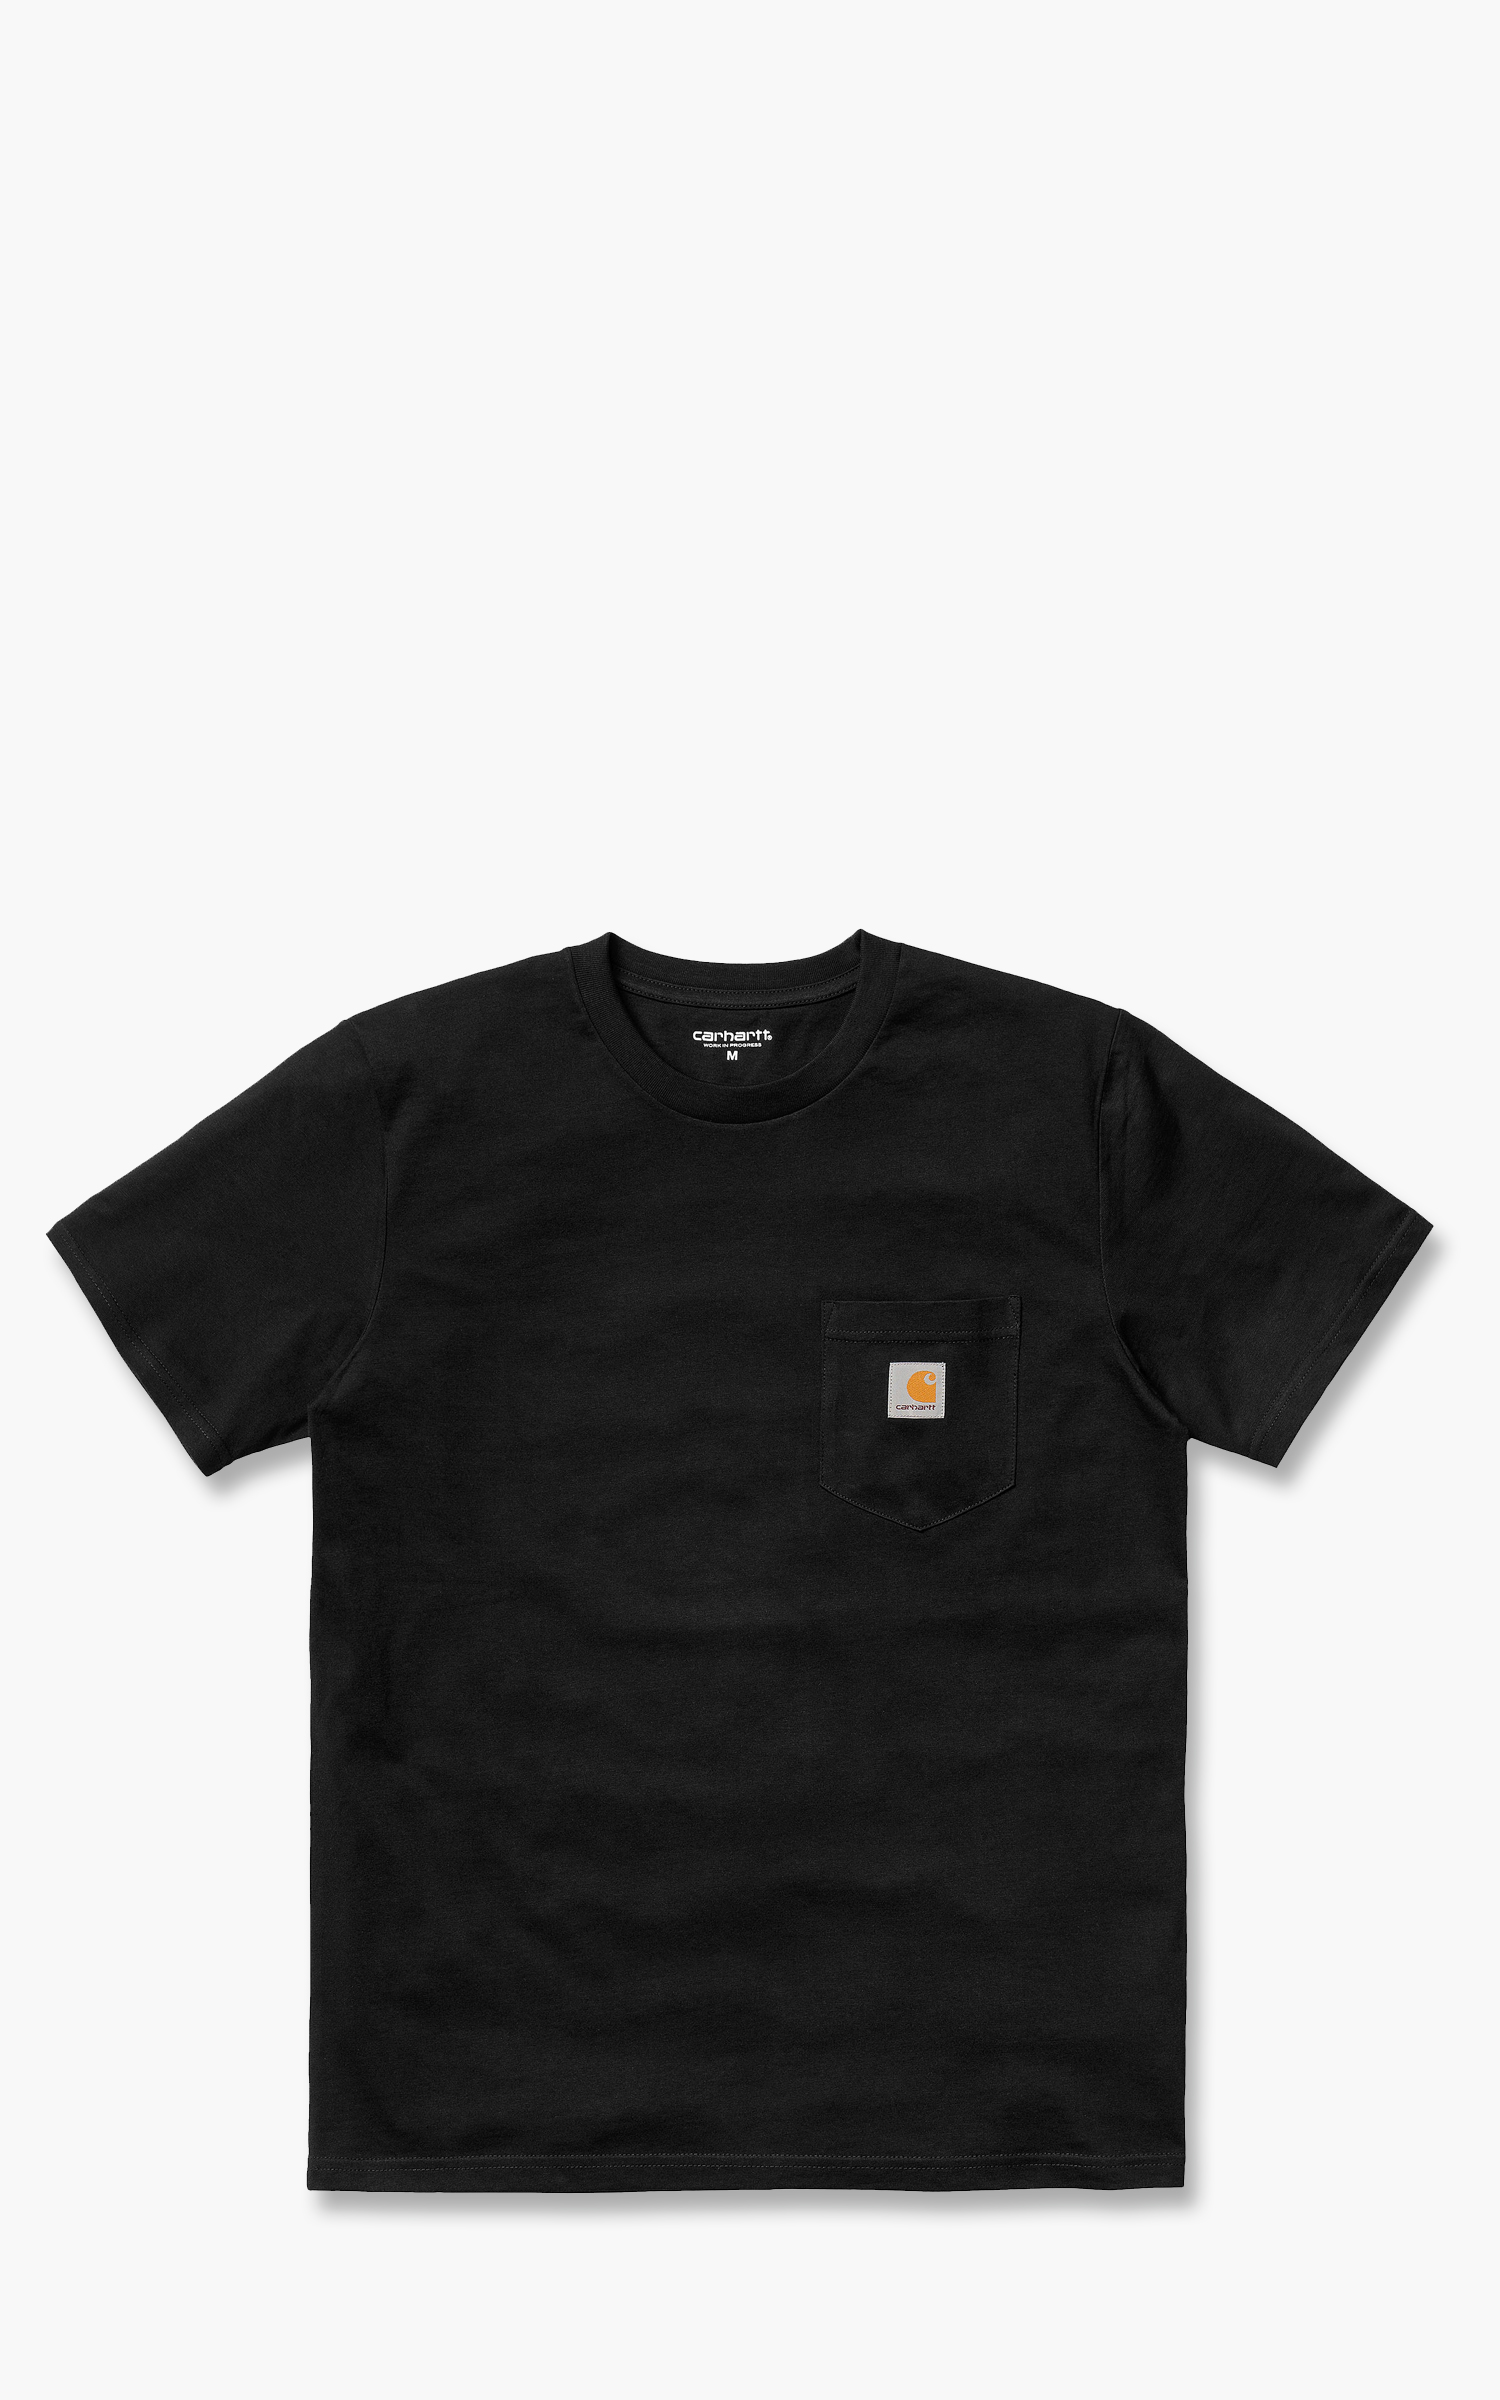 Carhartt Maddock Pocket T-Shirt Black